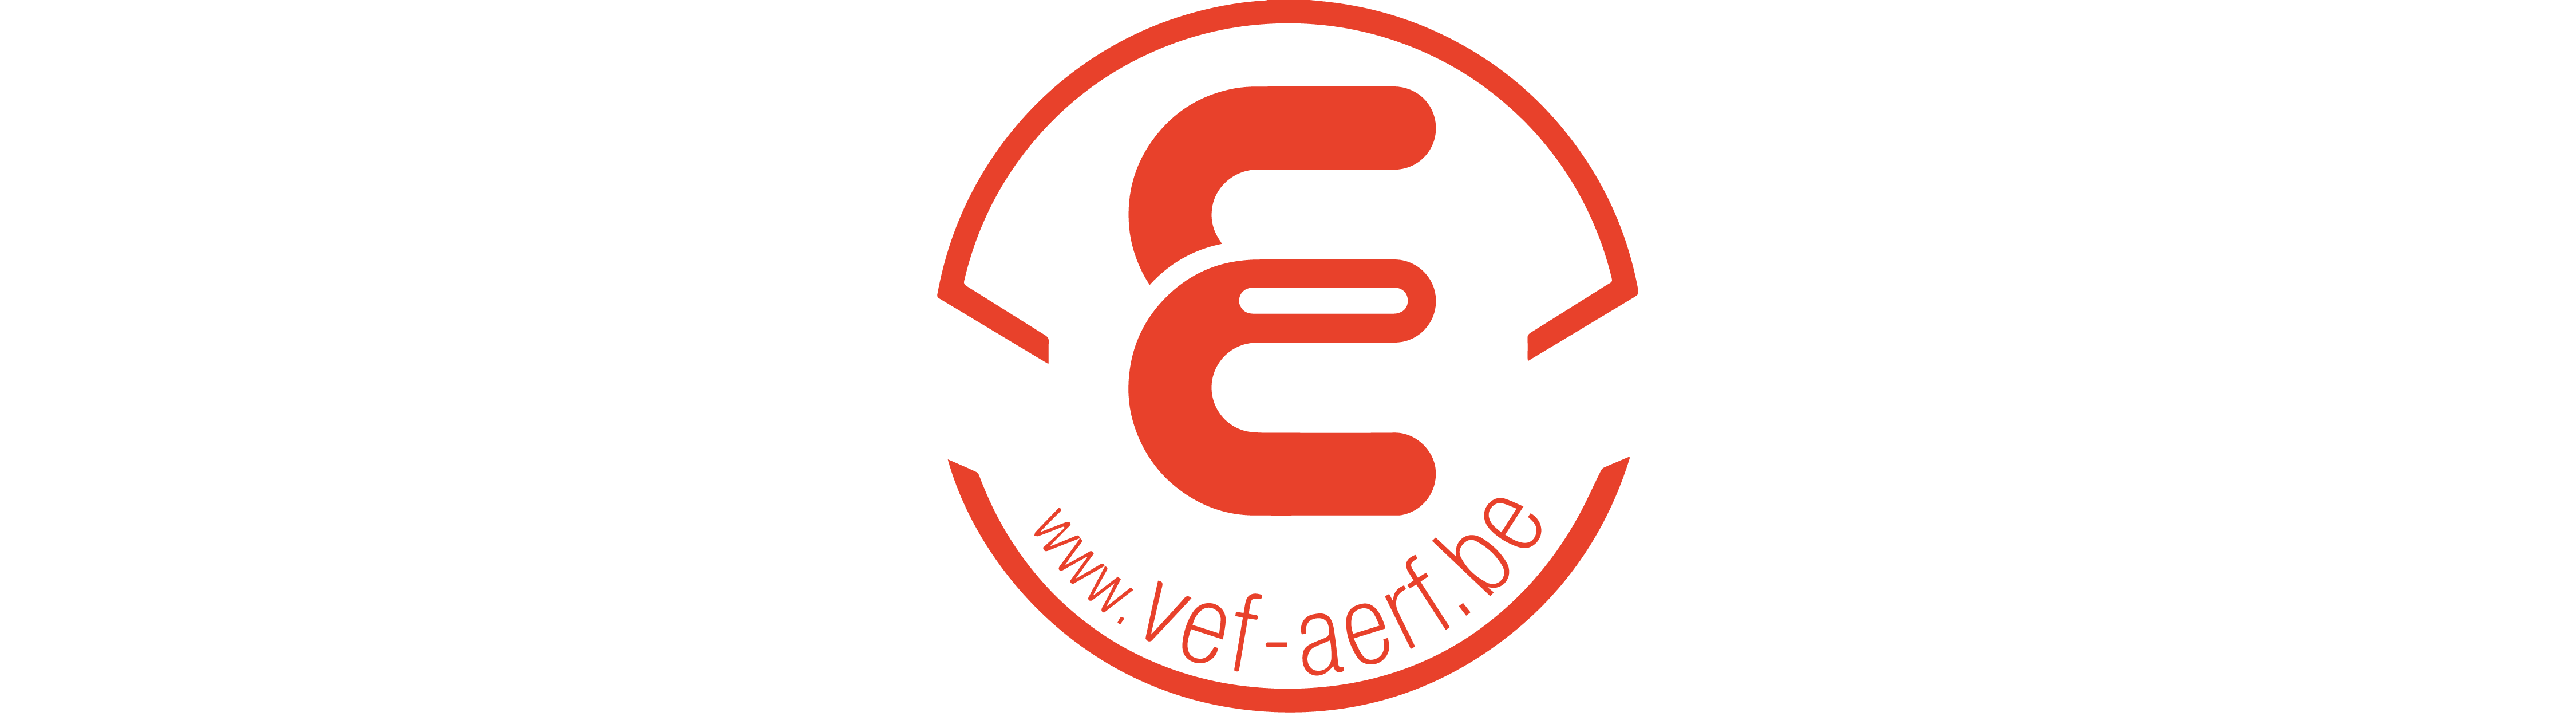 VEF logo ethische fondsenwerving